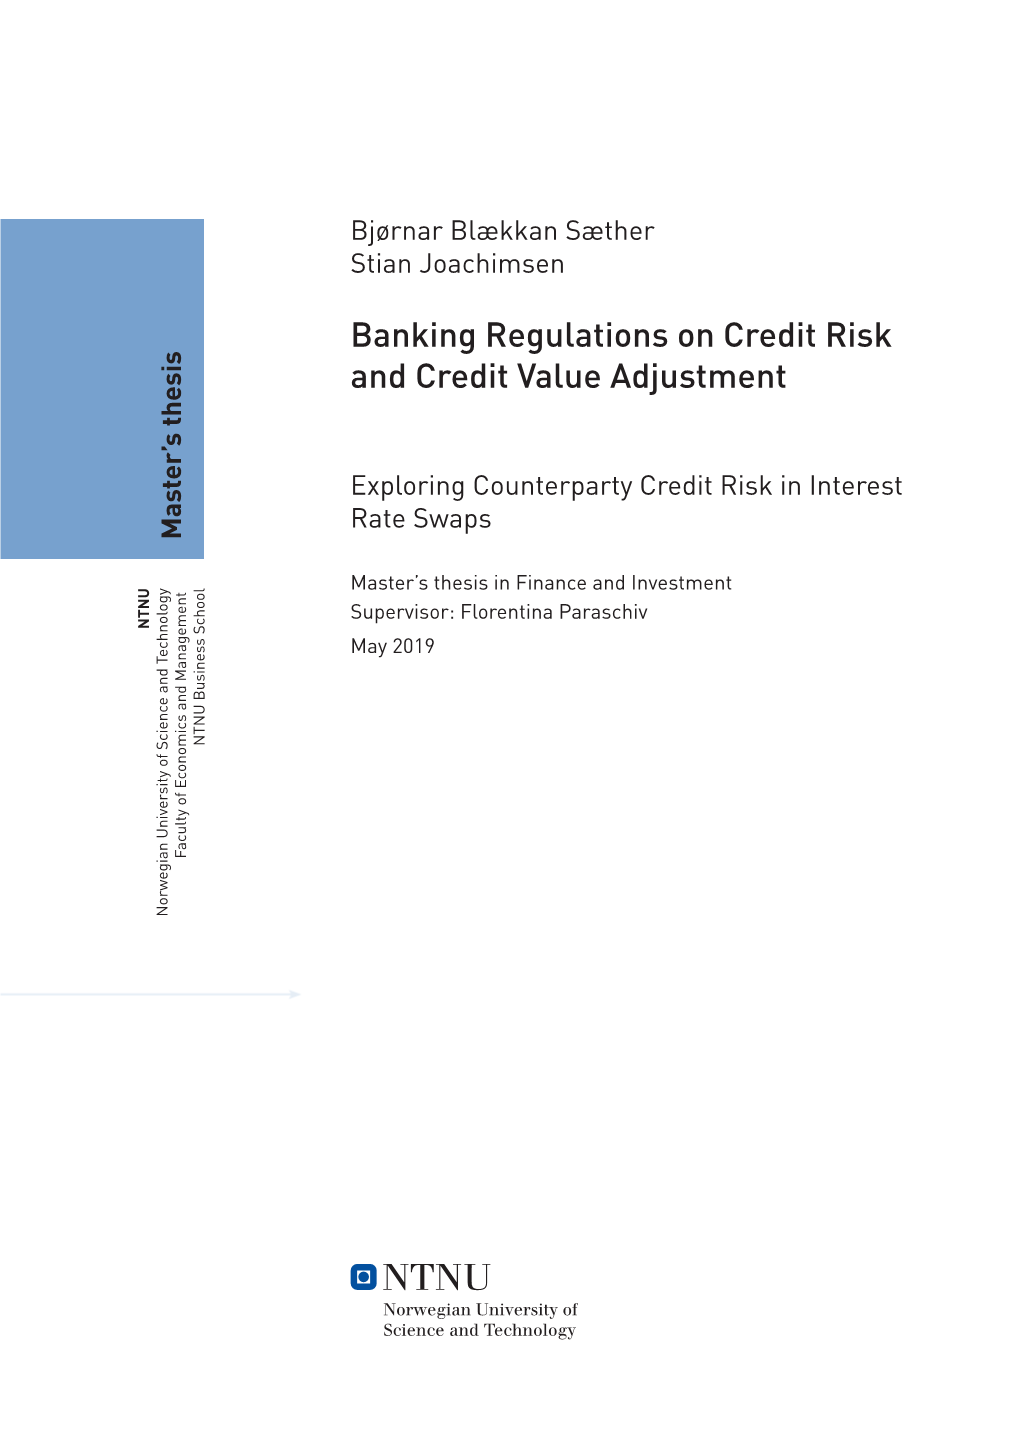 Banking Regulations on Credit Risk and Credit Value Adjustment